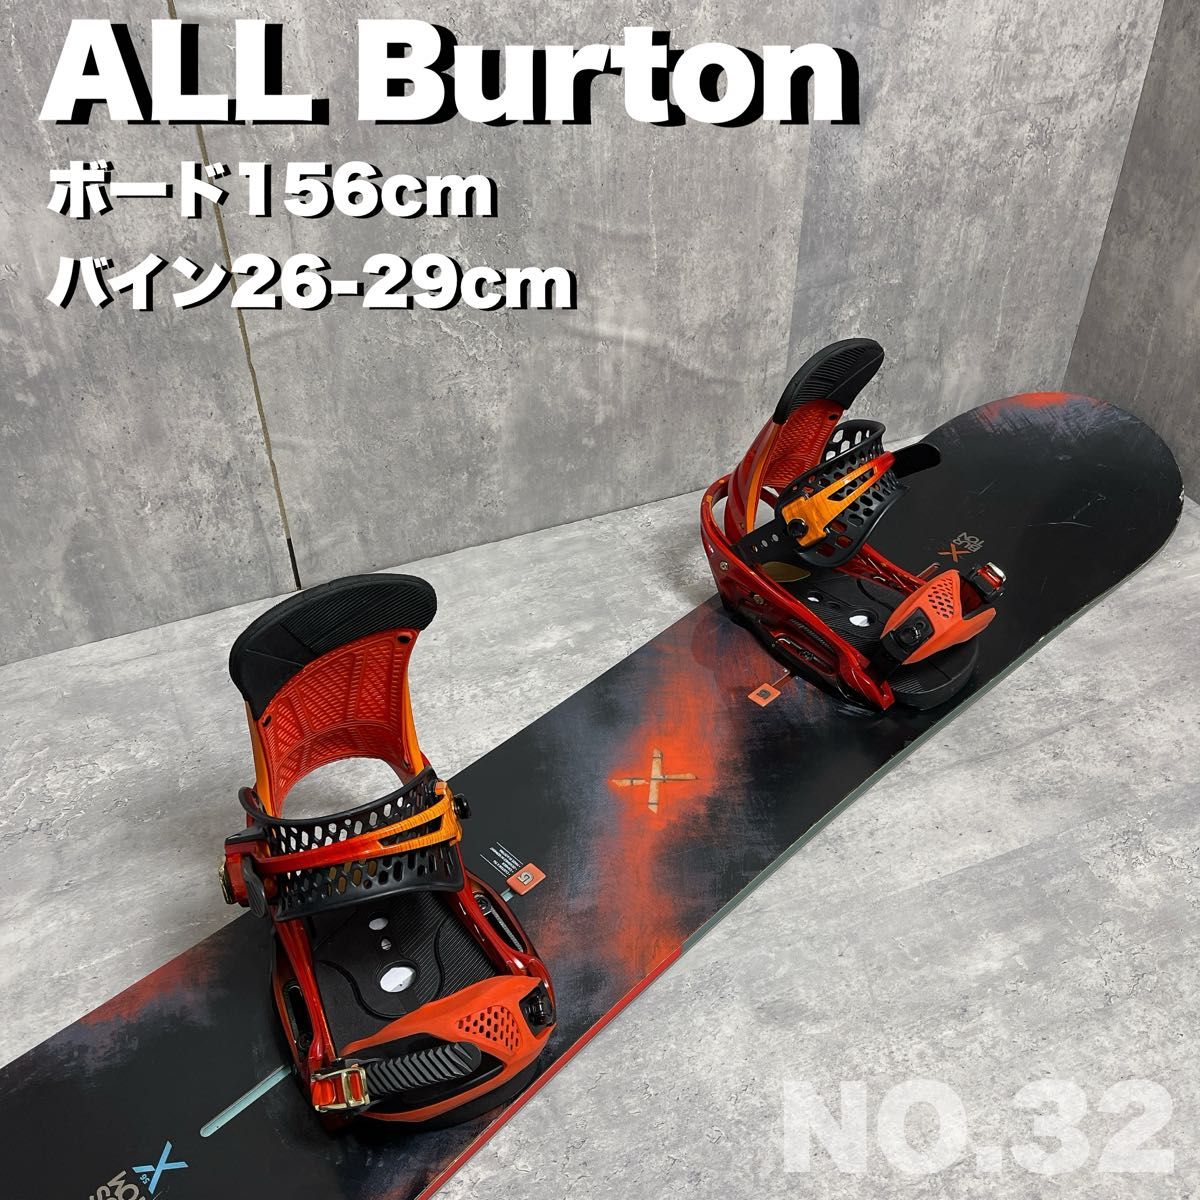 スノーボードセット メンズ Burton custom X 156cm ビンディング付き